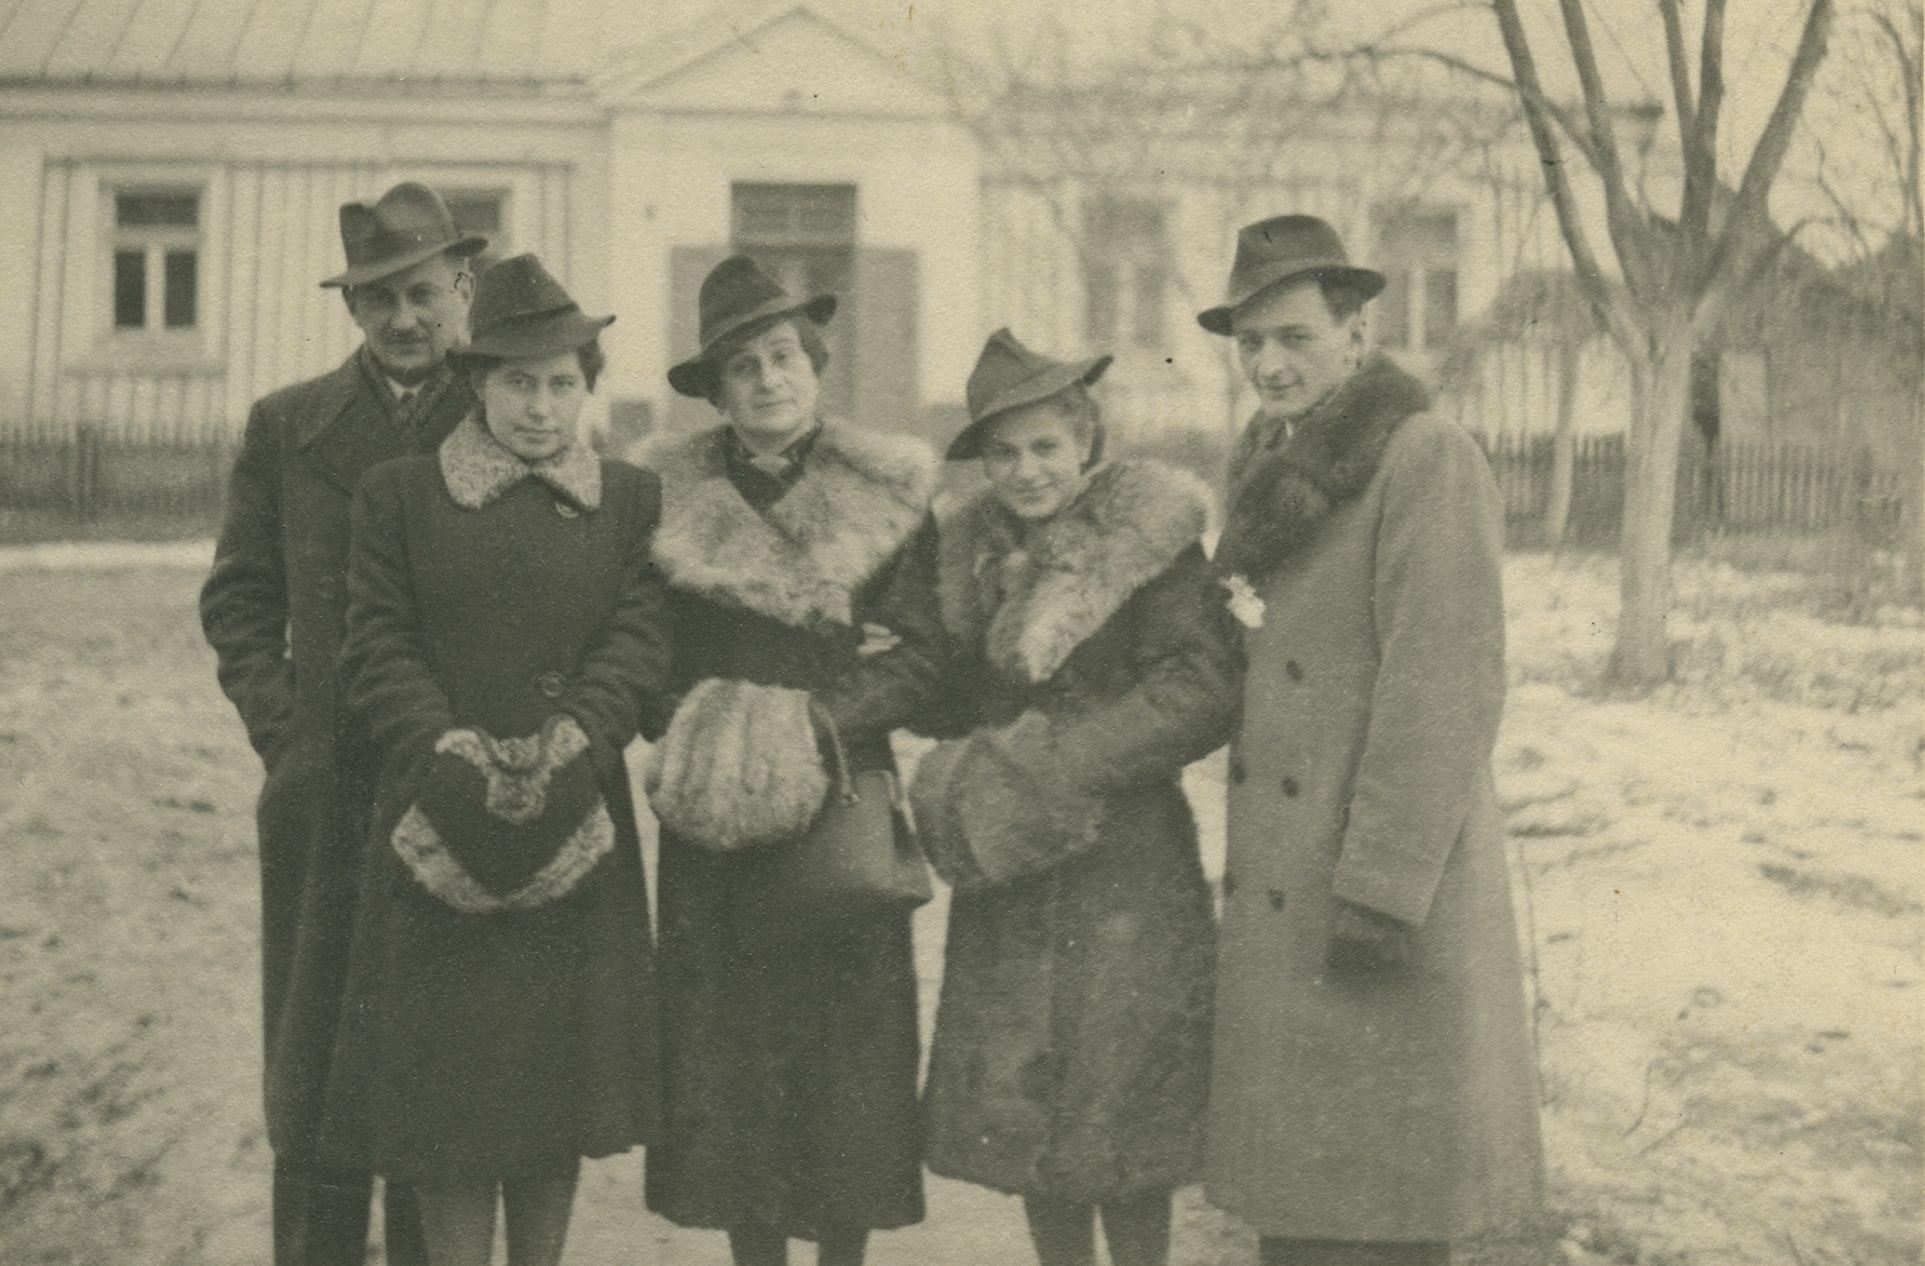 1941 rok, fotografia wykonana tuż przed ślubem Haliny i Lecha. Zdjęcie z książki "Dziewczyny wojenne" (Znak Horyzont 2017).